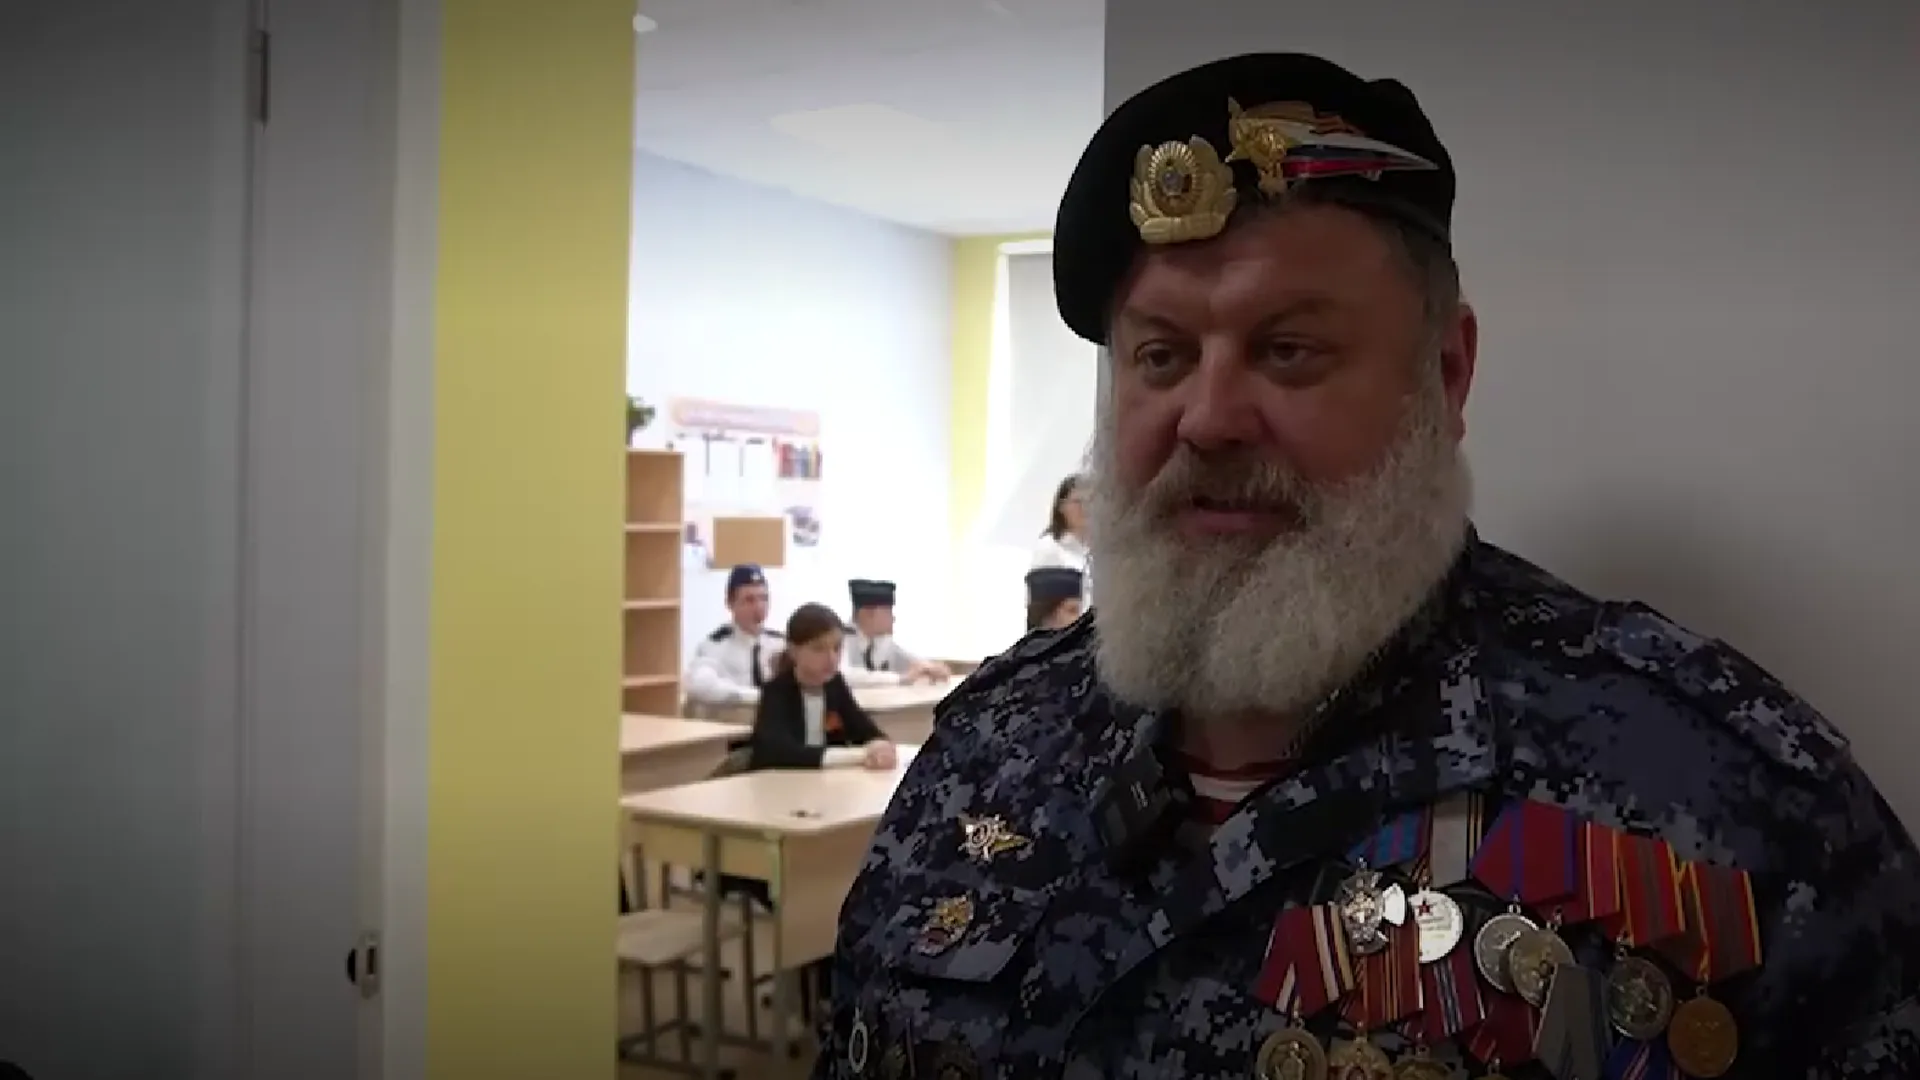 Депутаты и ветераны написали «Диктант Победы» в Домодедове